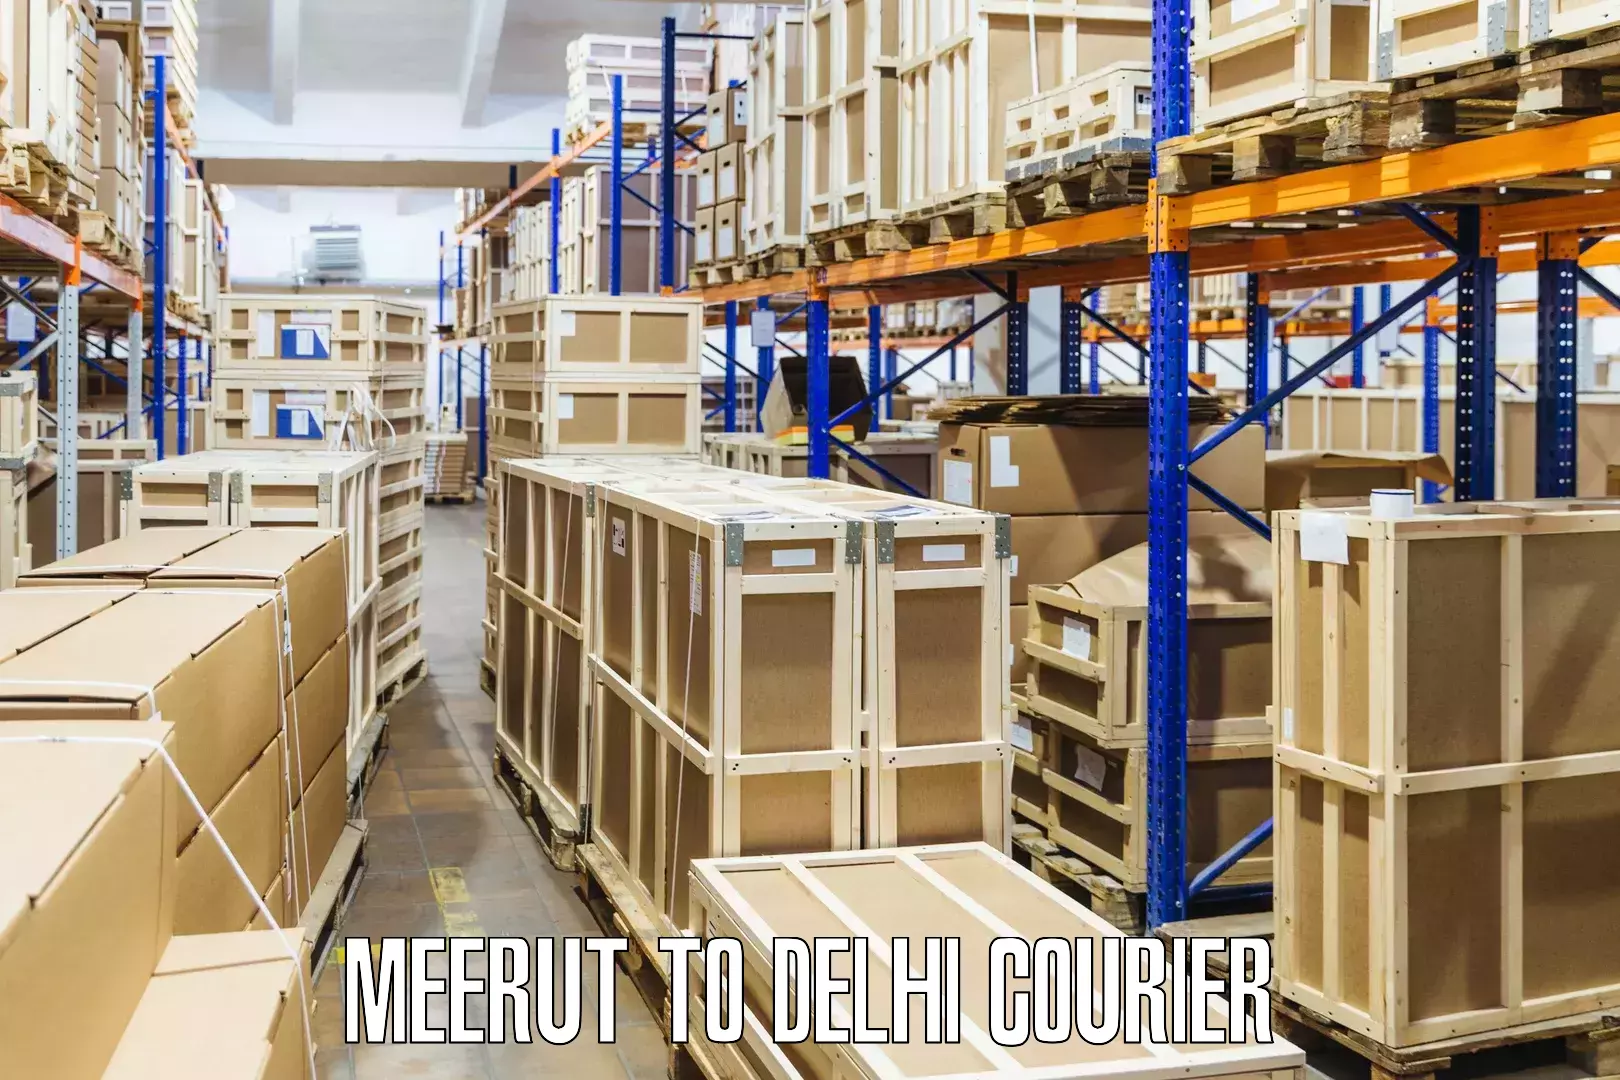 Global logistics network Meerut to Delhi